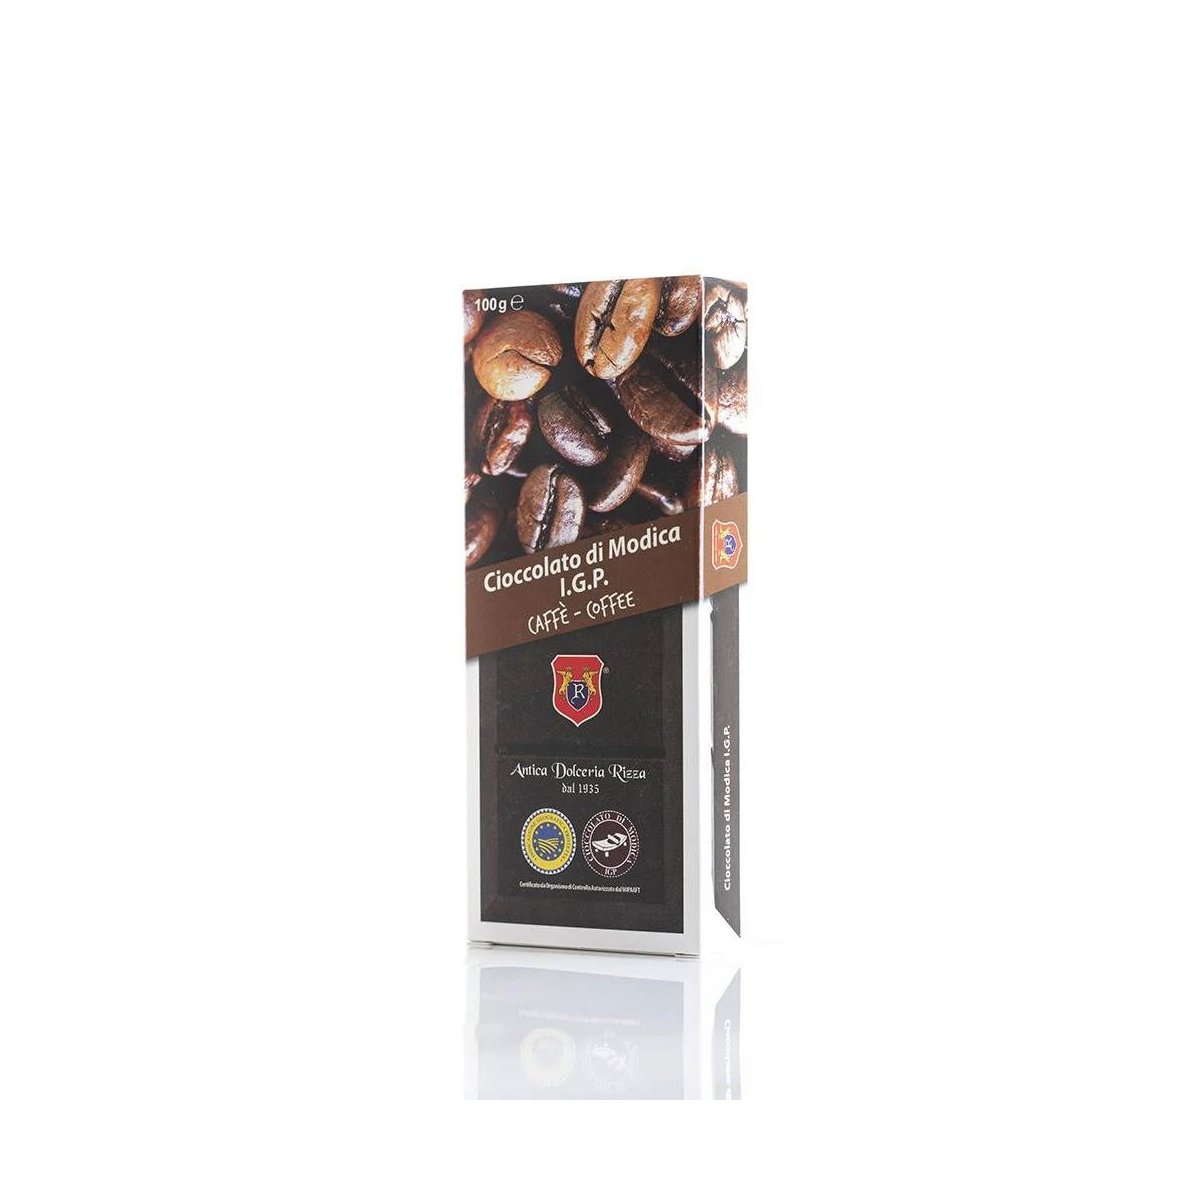 Cioccolato di Modica IGP al Caffè, 100 gr